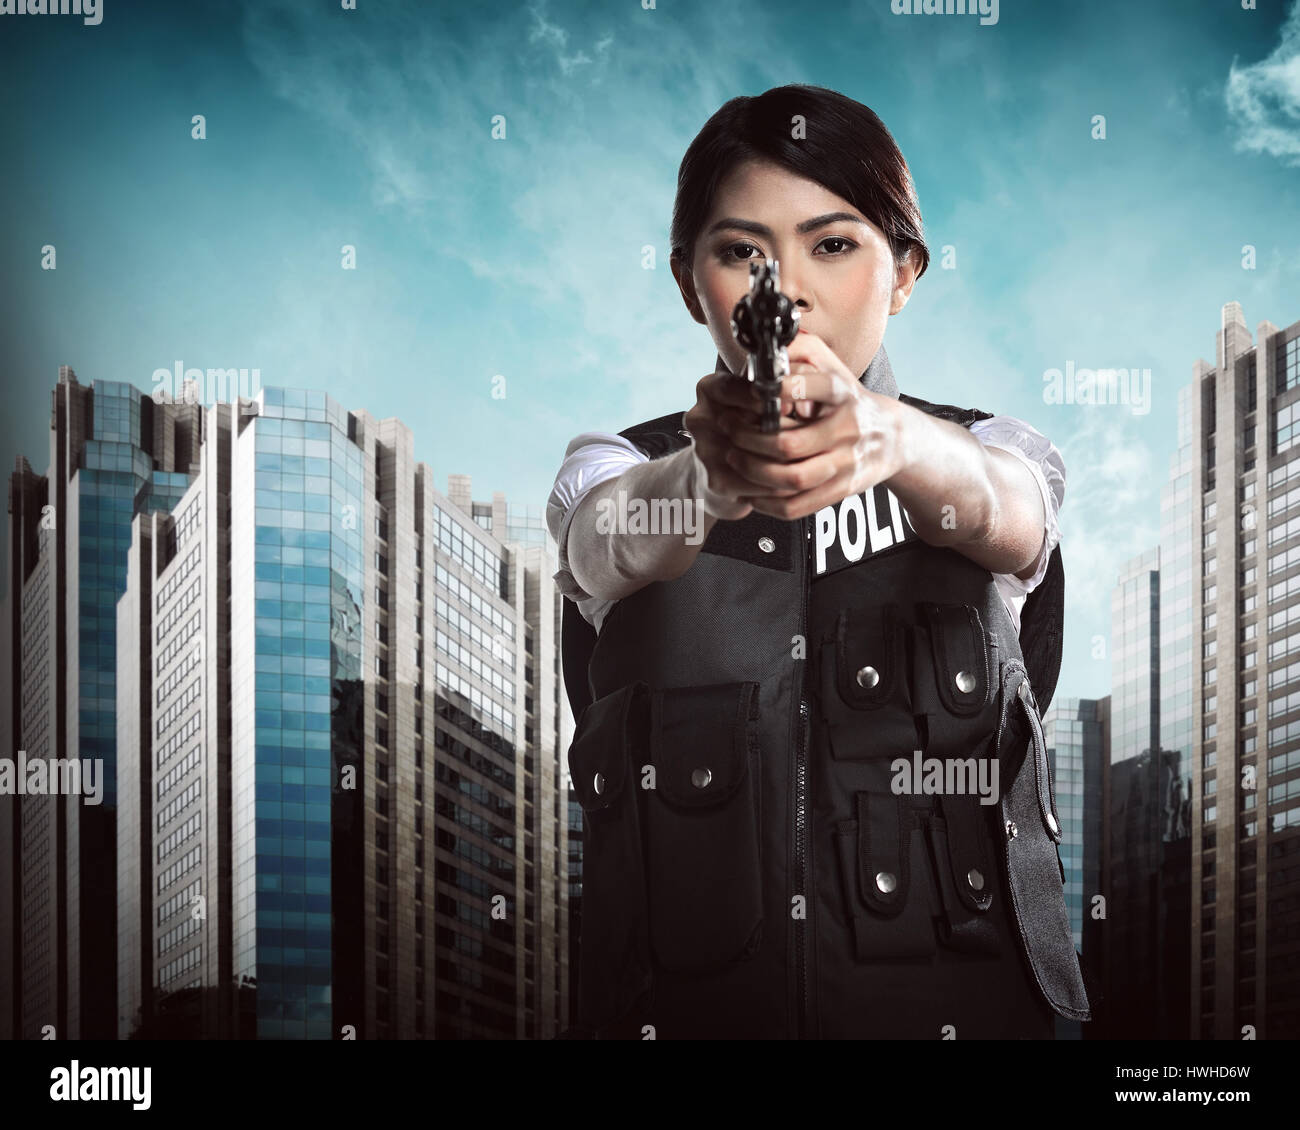 Belle police woman holding fusil prêt à faire feu Banque D'Images